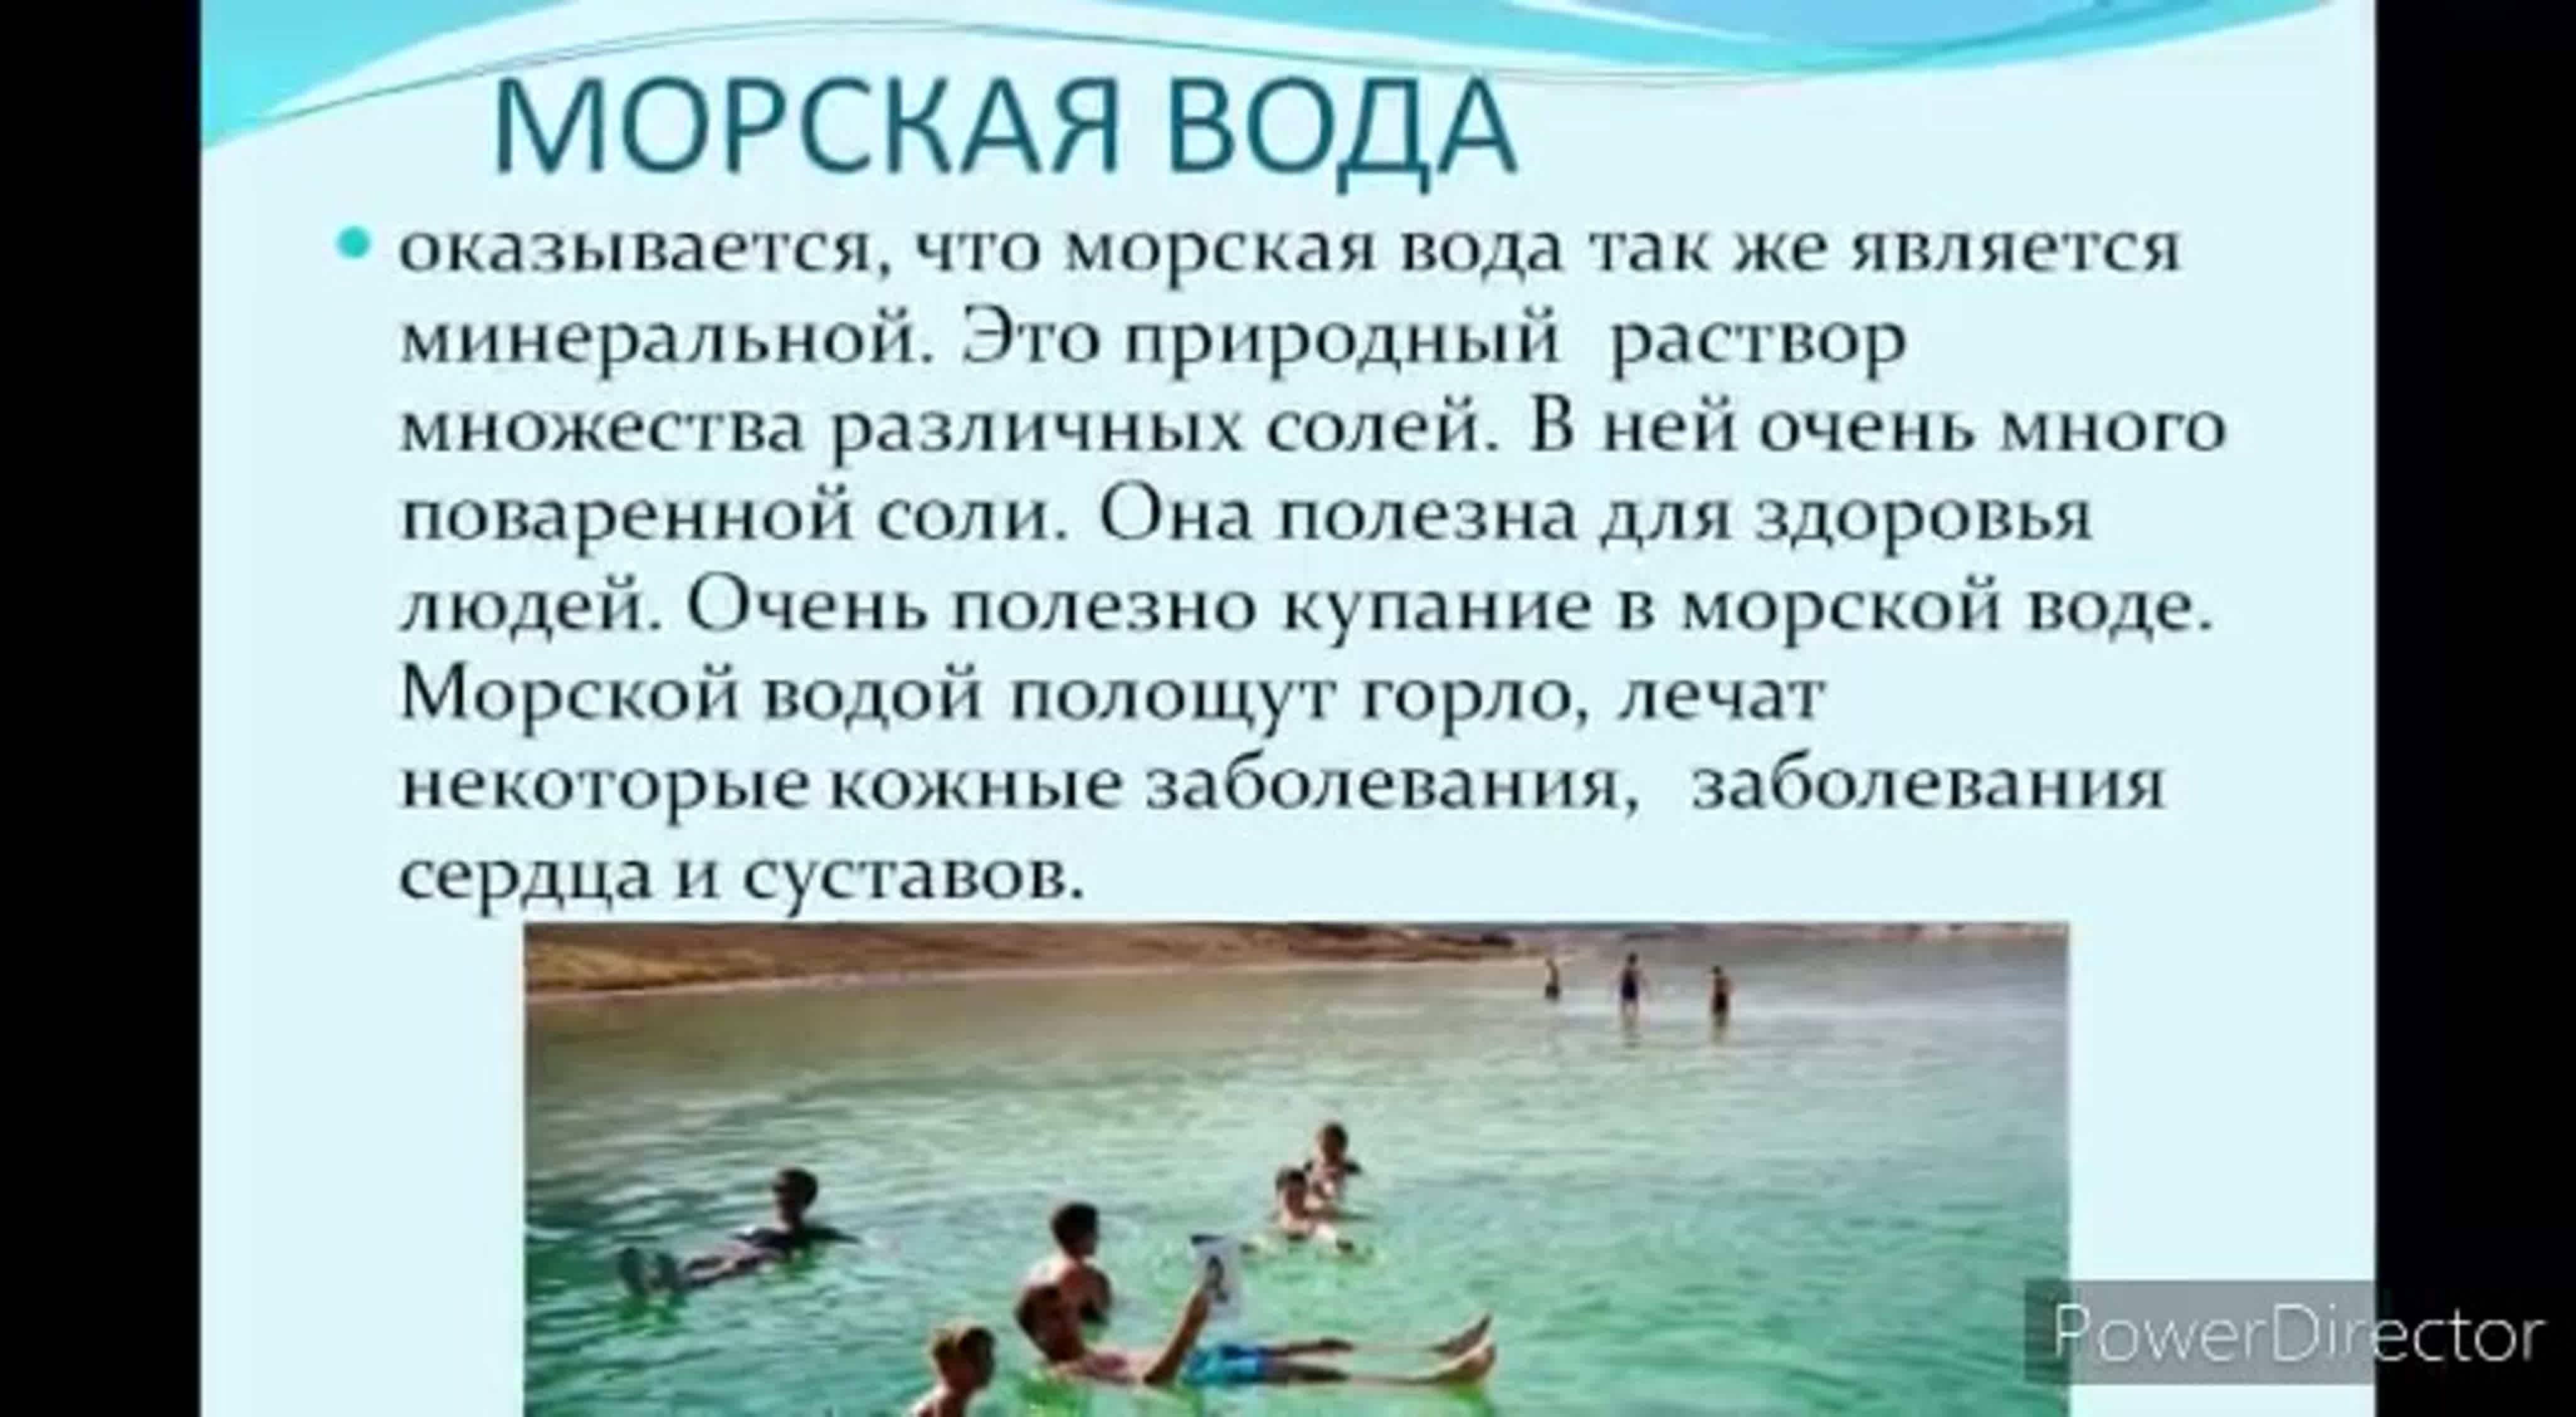 Соленая вода польза. Море полезно для здоровья. Польза моря для здоровья человека. Польза моря для человека. Черное море польза для здоровья.